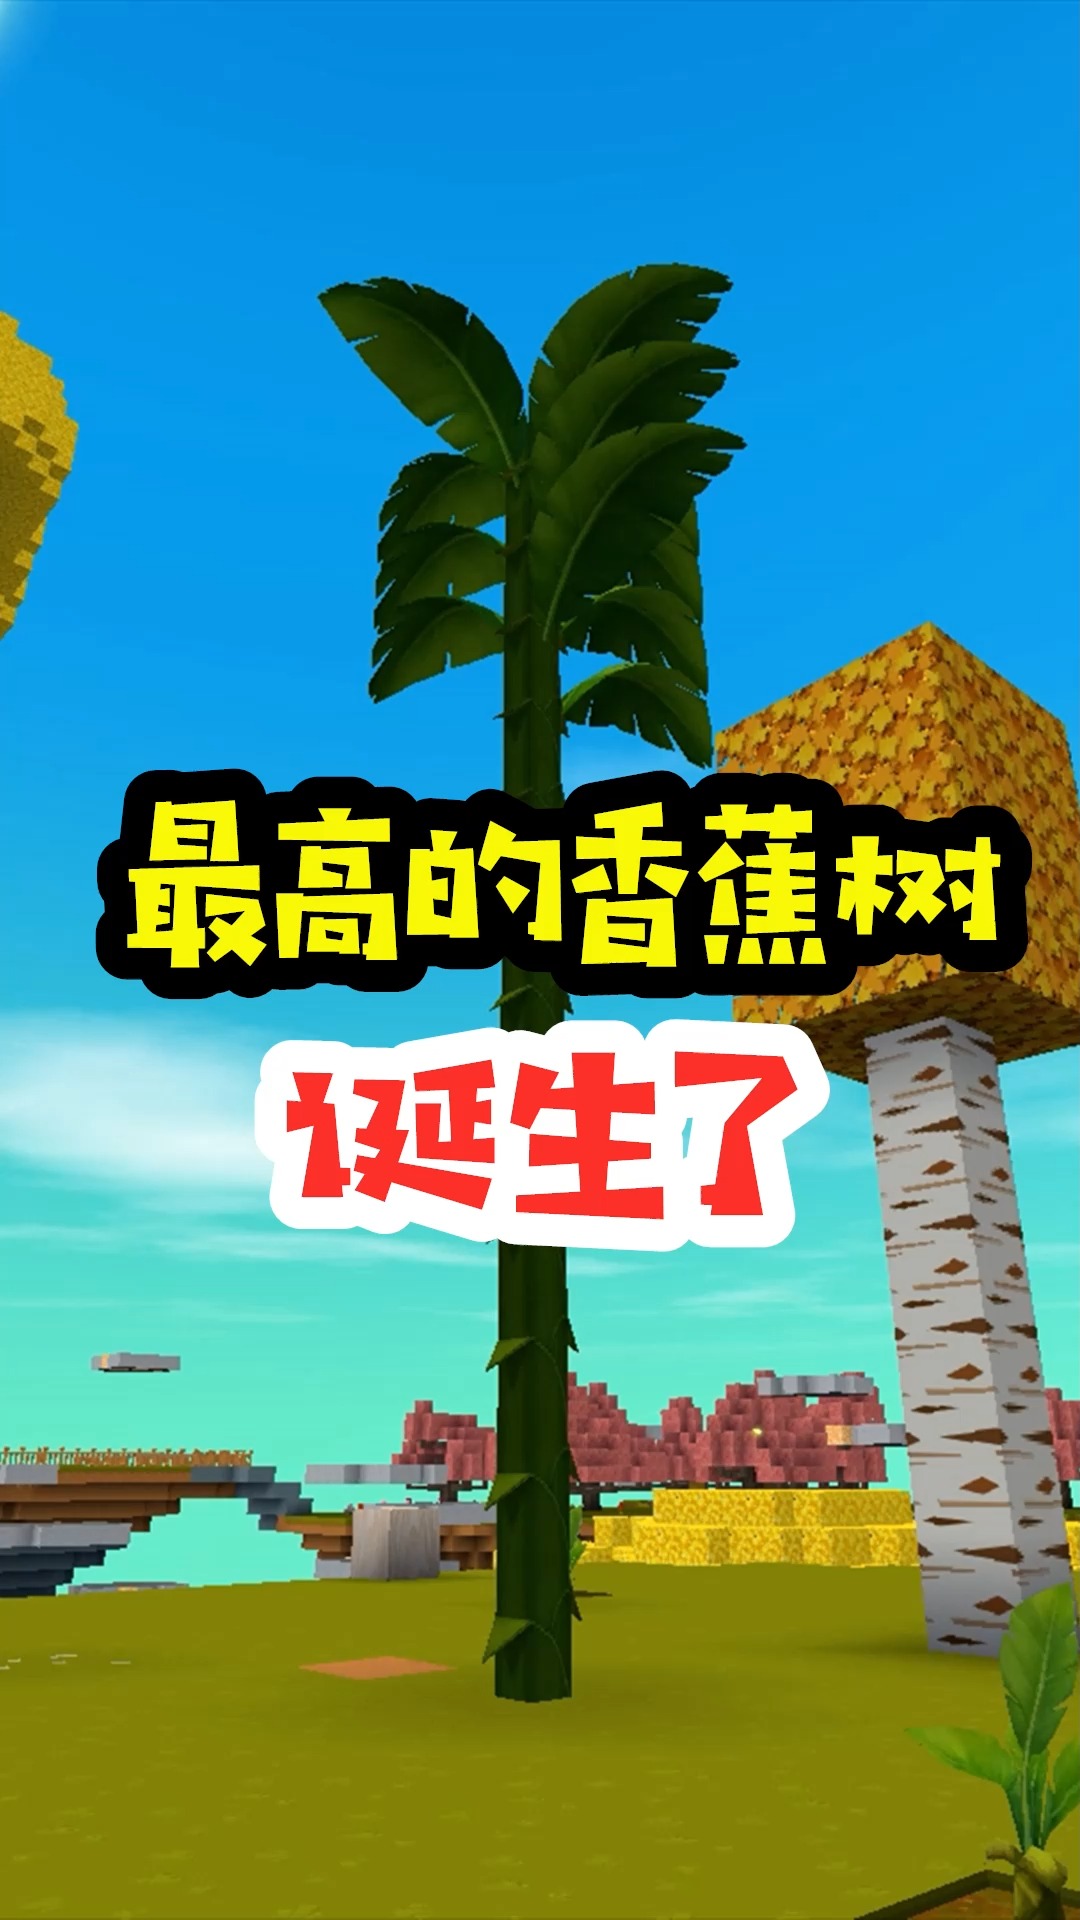 迷你世界王木薯极限空岛198手动组装最高的香蕉树